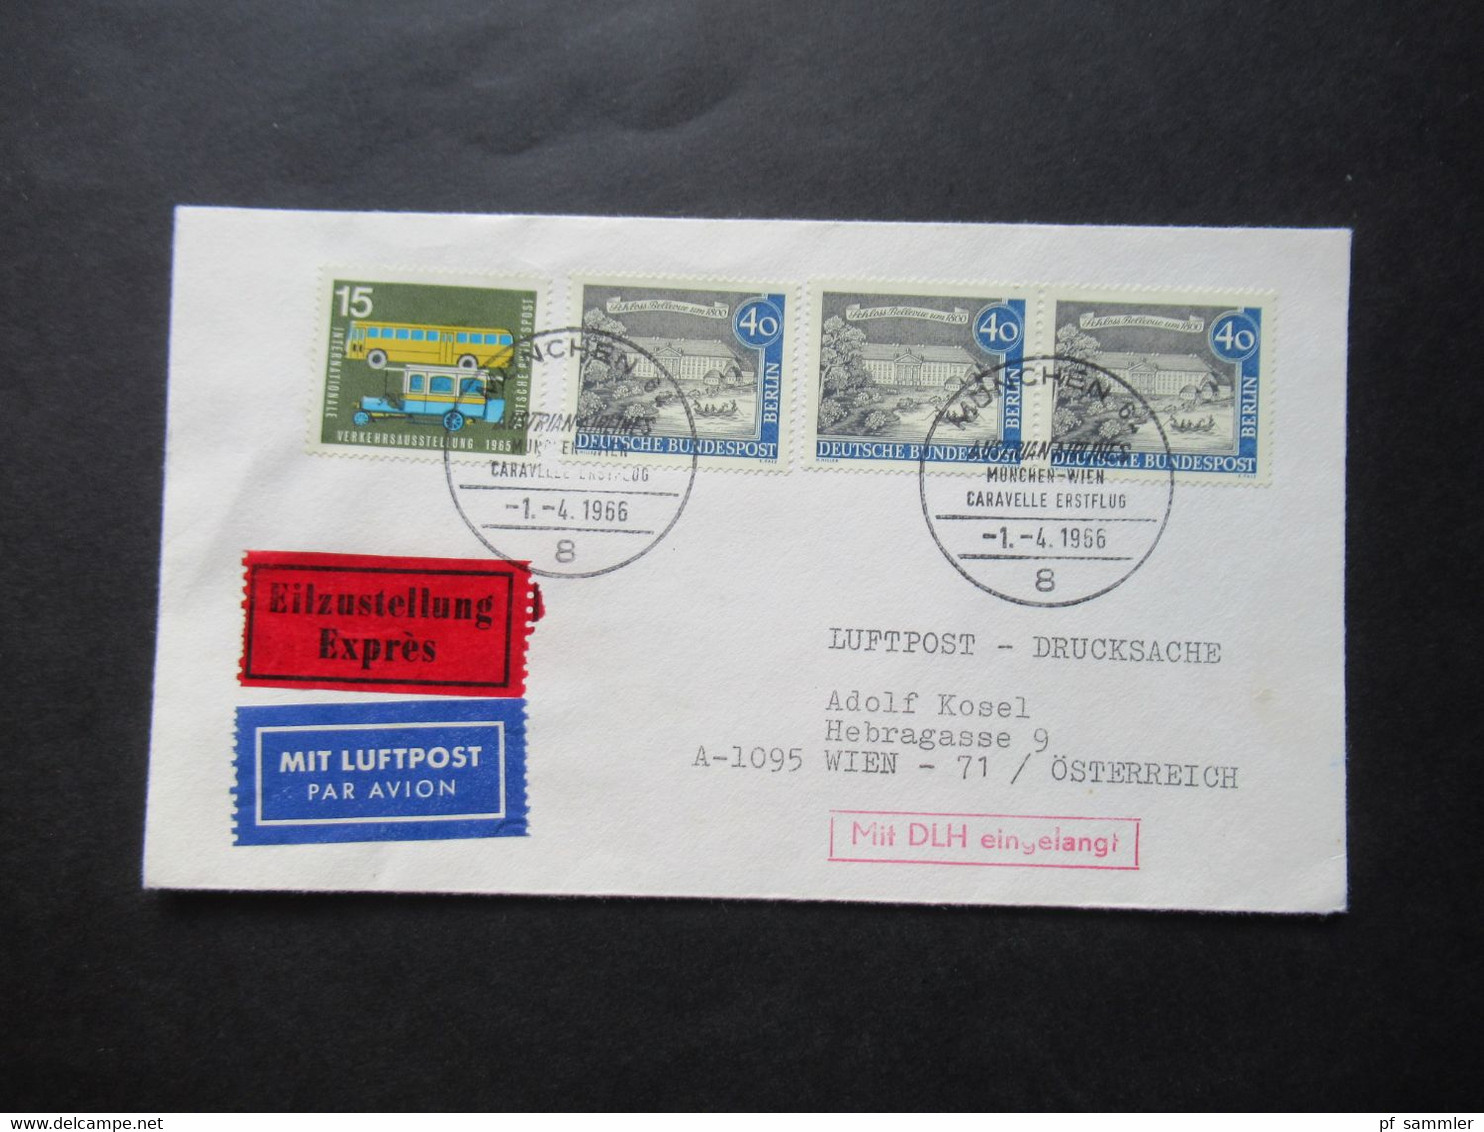 1966 Berlin (West) Alt Berlin Nr.220 MiF Mit Luftpost Eilzustellung Expres München - Wien / Stempel Mit DLH Eingelangt - Cartas & Documentos